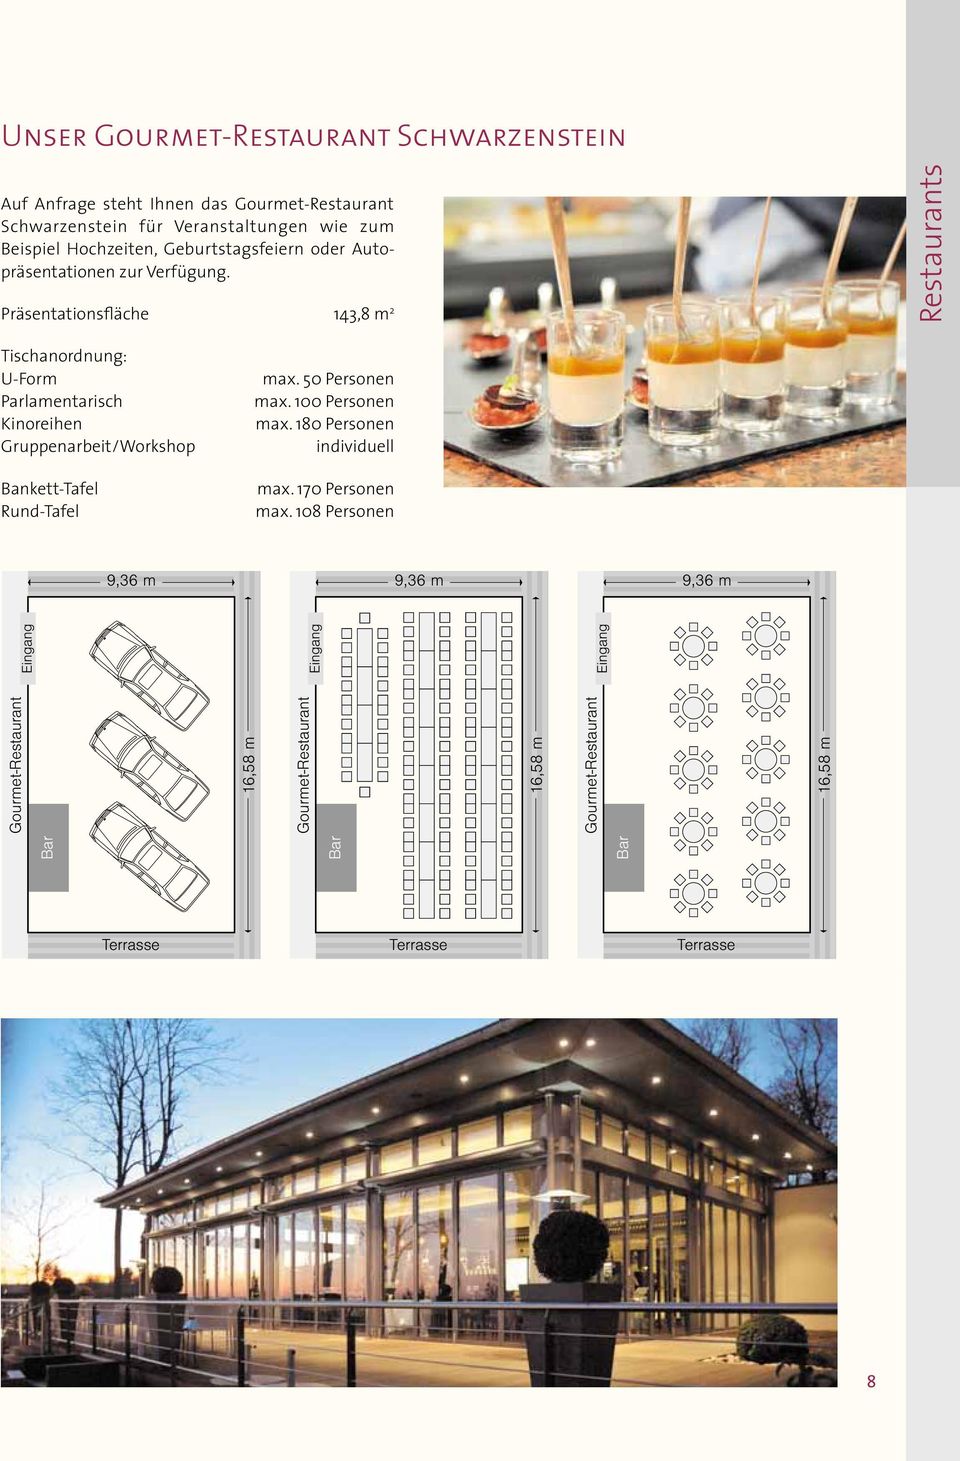 Präsentationsfläche 143,8 m 2 Restaurants Tischanordnung: U-Form Parlamentarisch Kinoreihen Gruppenarbeit/Workshop Bankett-Tafel Rund-Tafel max.